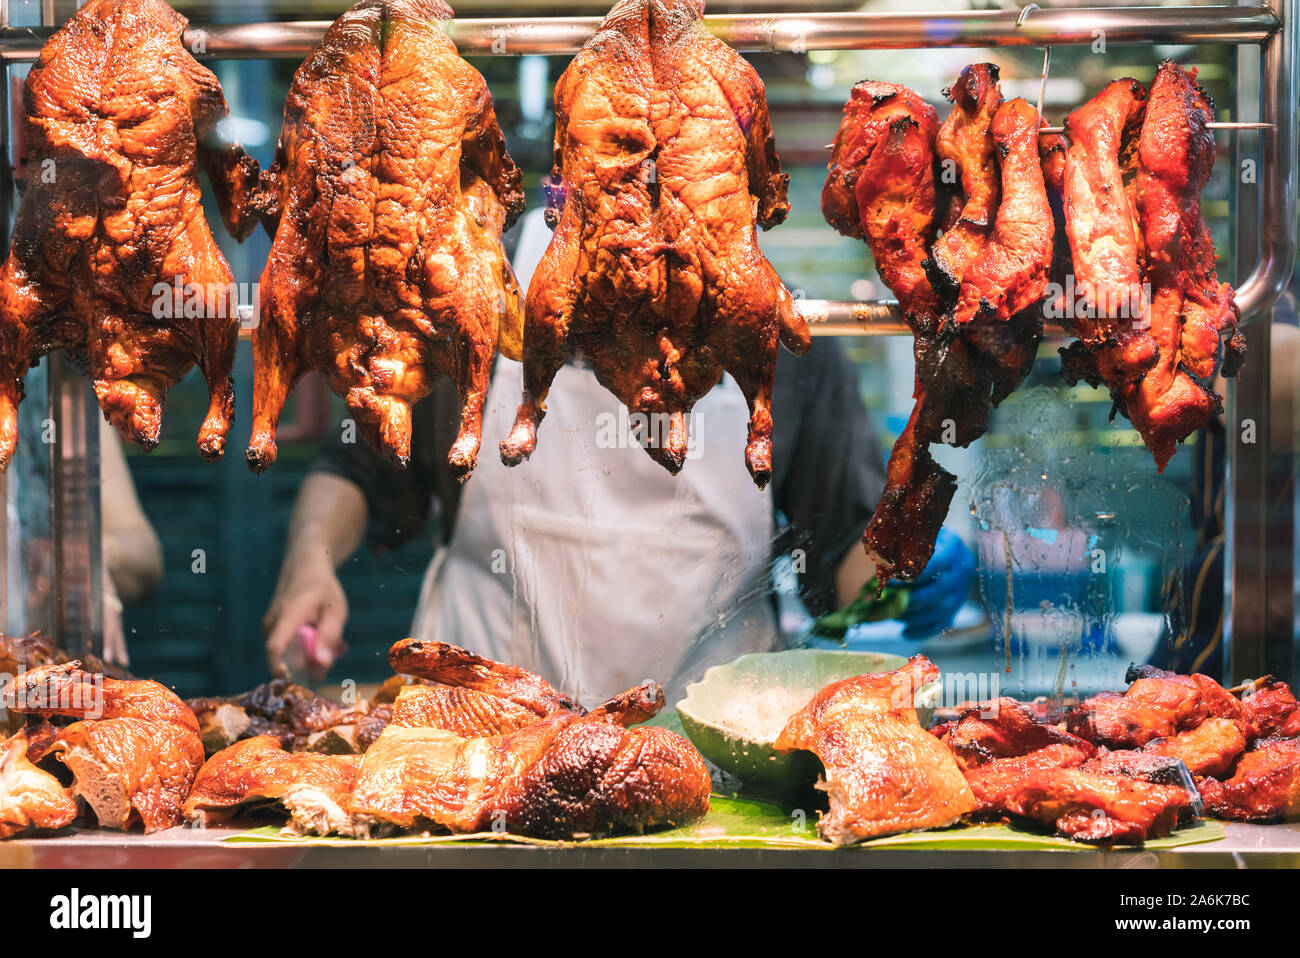 Arrostito croccante anatra cinese e la carne di maiale appeso dal finestrino di un cibo di strada del mercato notturno in stallo - asiatico marinato la carne e il pollame sul display in un ristorante locale - la cucina, viaggi e delicatezza concept Foto Stock